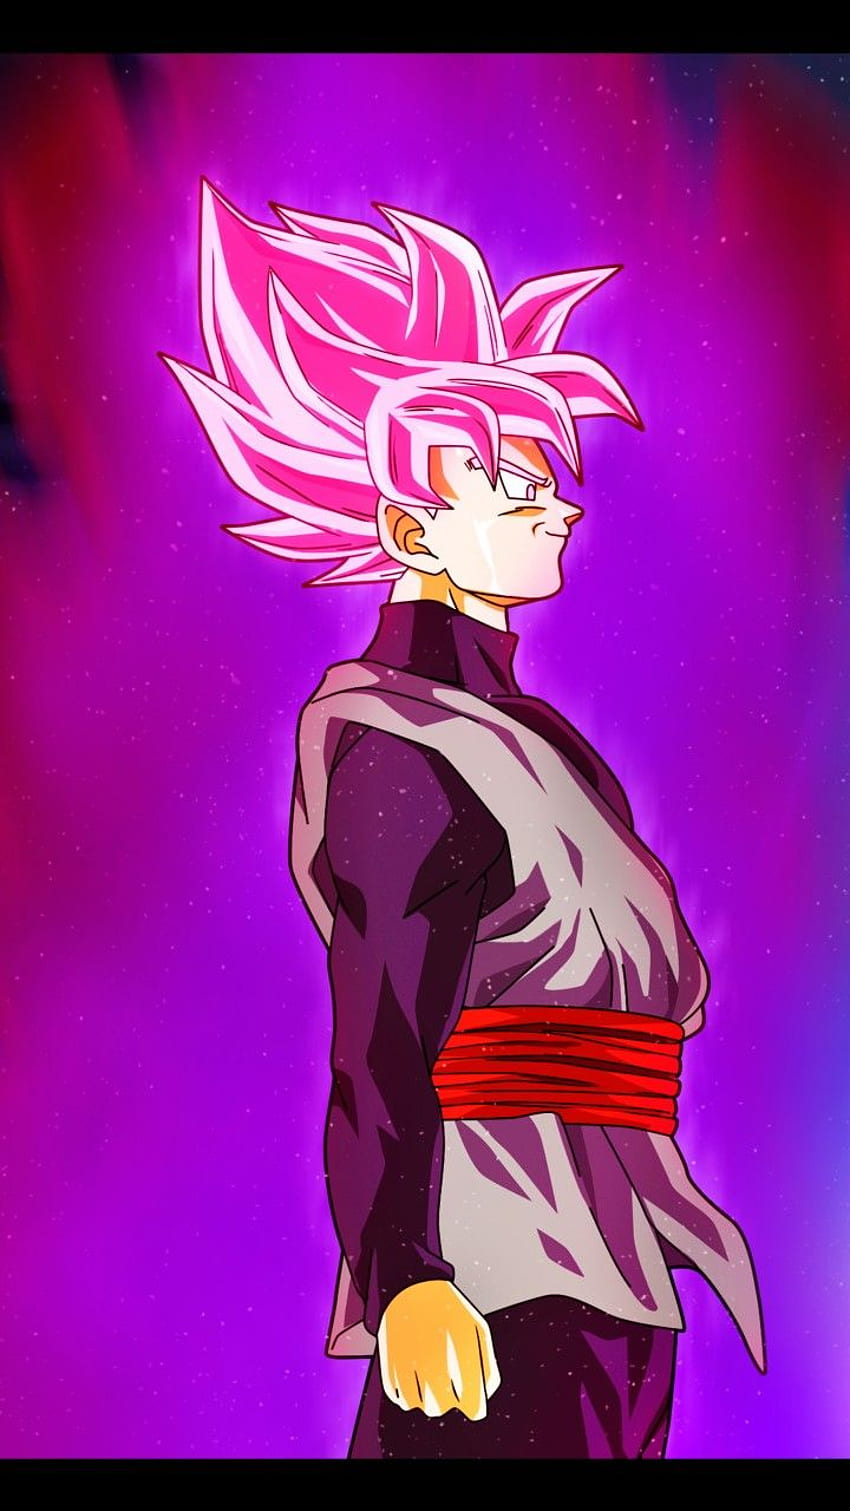 Hình nền Black Goku: Black Goku - một trong những nhân vật nổi tiếng nhất trong Dragon Ball đang đợi bạn khám phá với hình nền đầy màu sắc và độc đáo. Để trang trí cho chiếc điện thoại của mình thêm cá tính và phong cách, bạn hãy tải ngay hình nền Black Goku này.